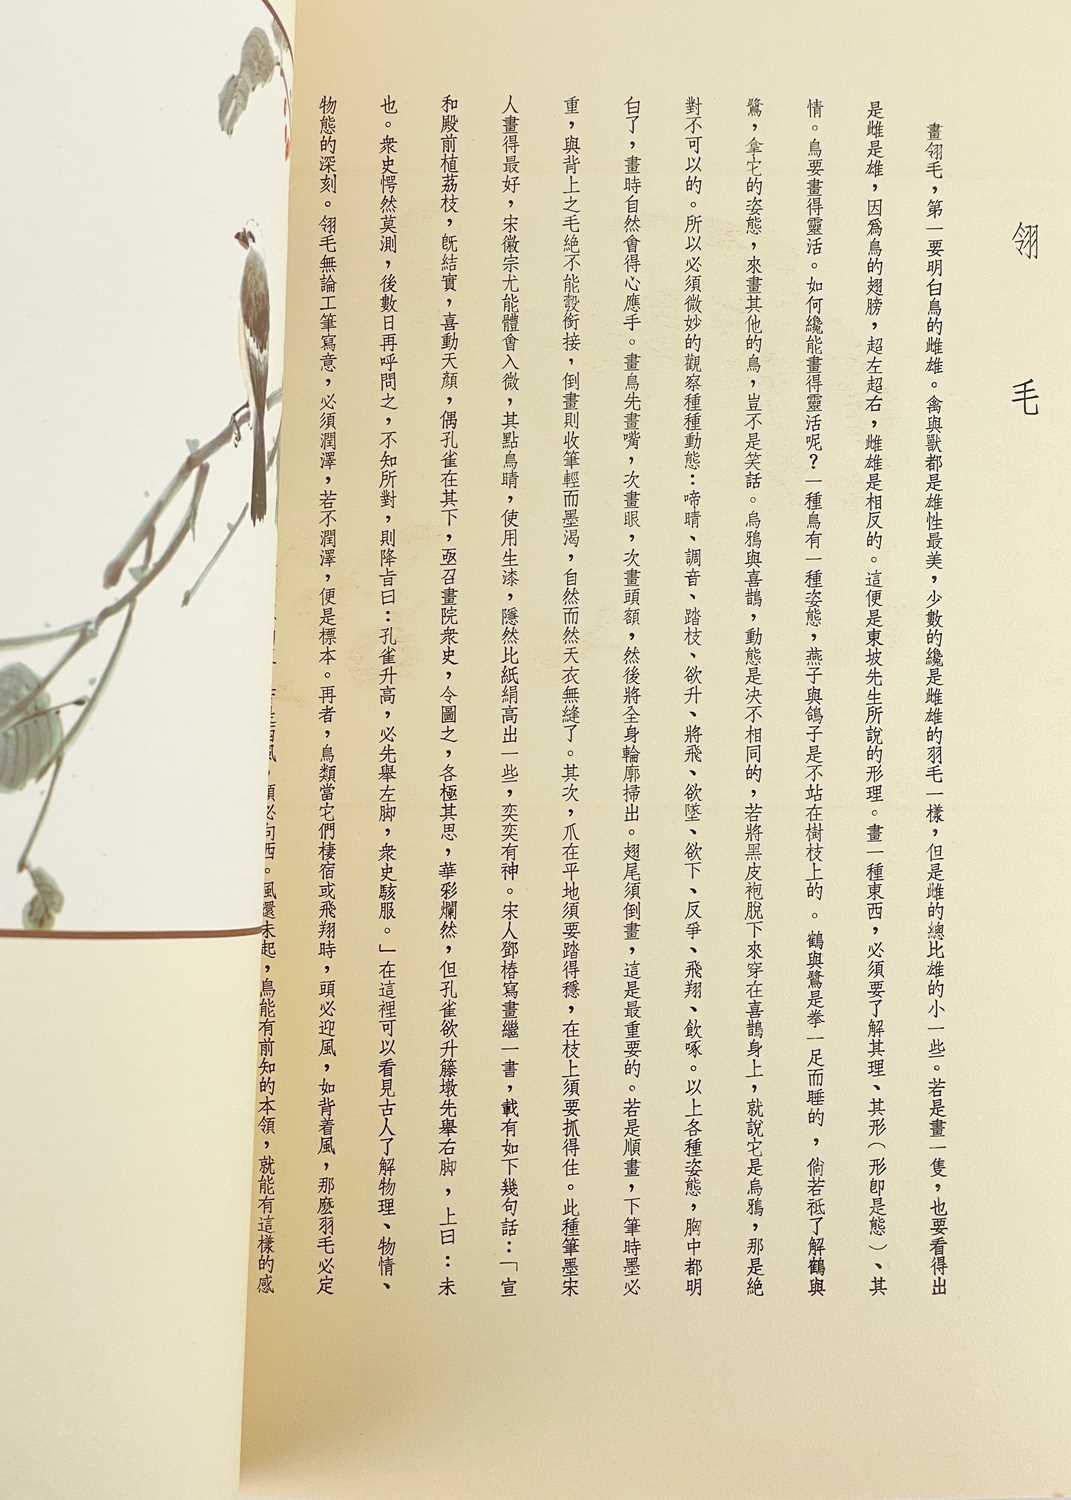 Da-Chien (Professor Chang), 'Chinese Painting' Yee Tin Tong Printing Press Ltd, Hong Kong, 1961., - Image 8 of 11